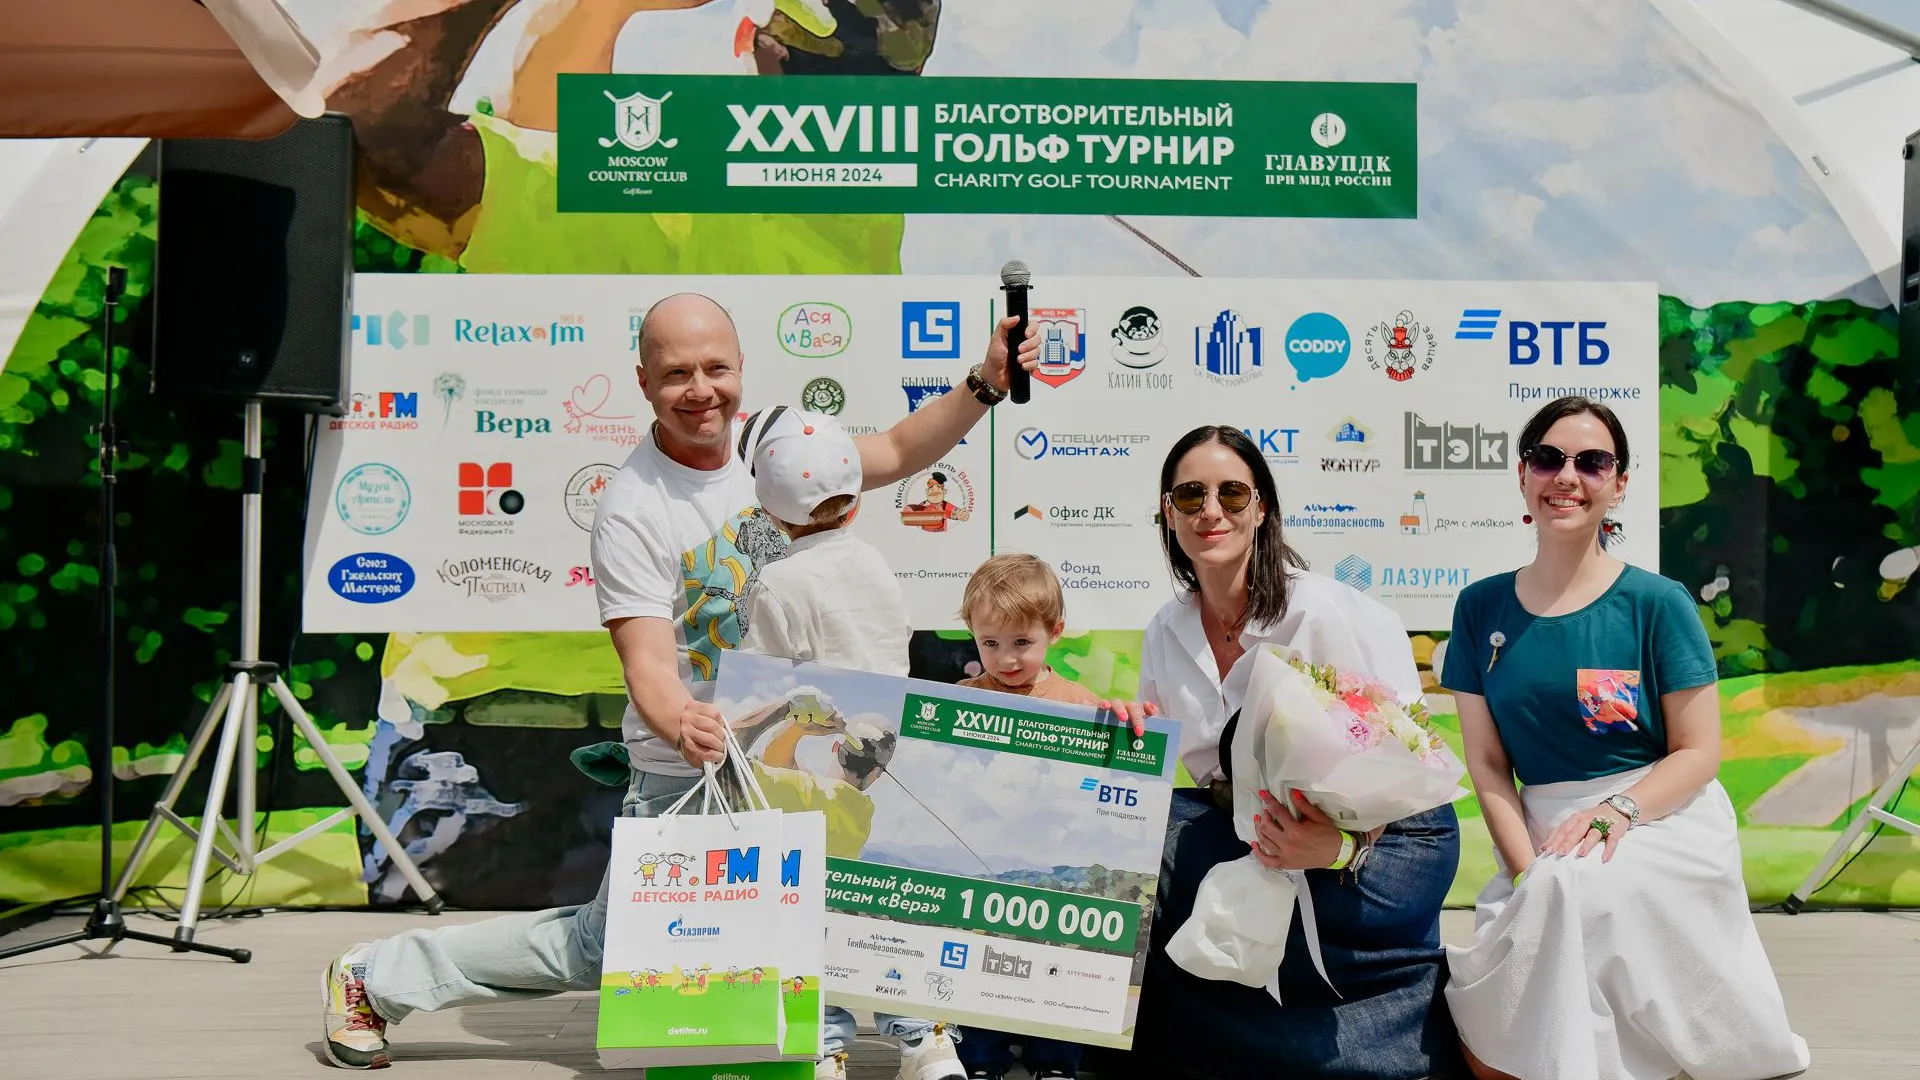 Старейший благотворительный гольф-турнир России состоялся в Подмосковье